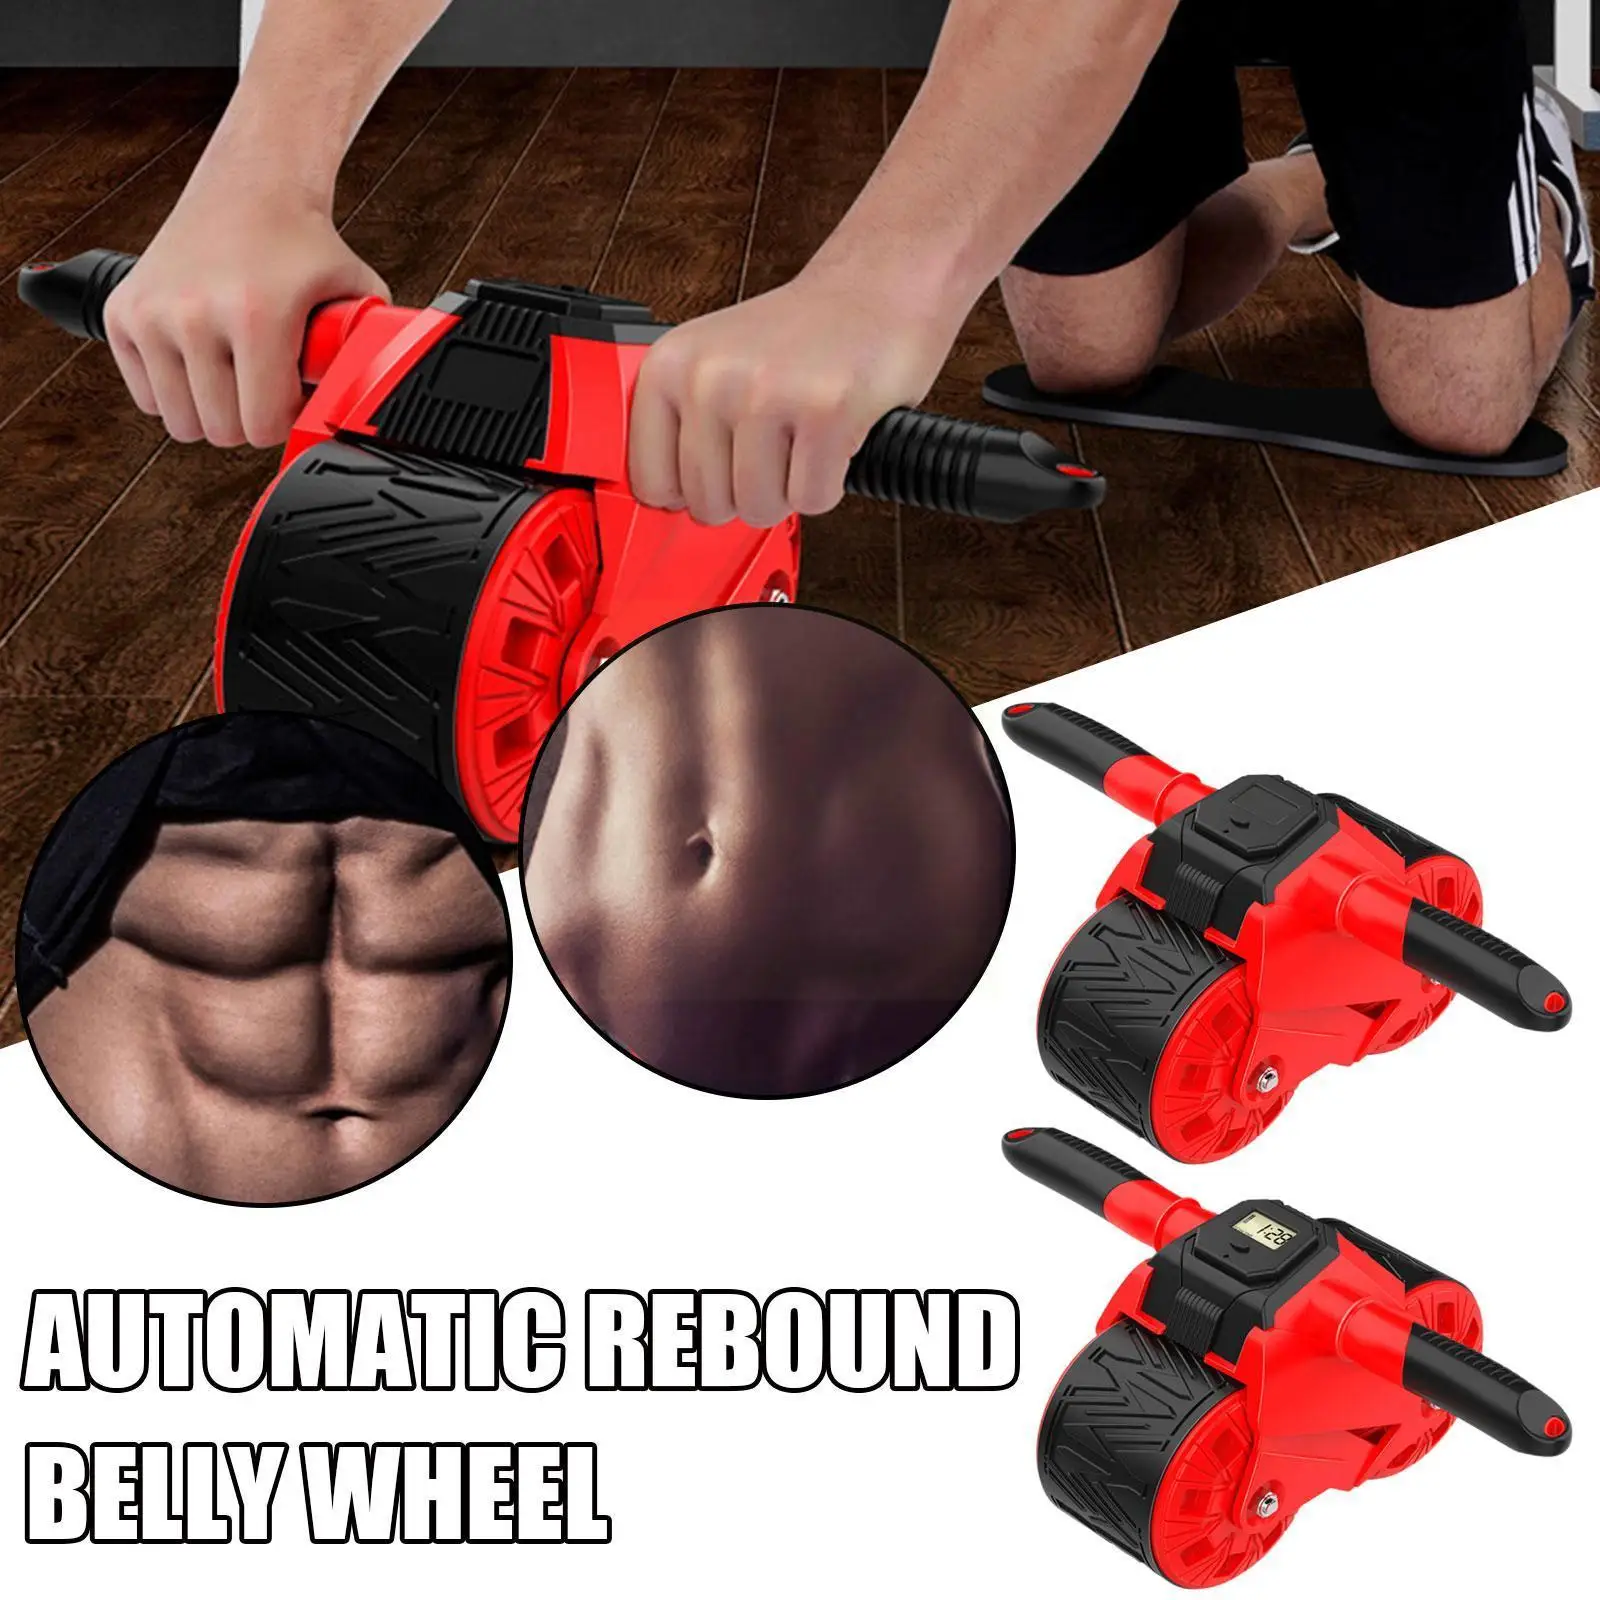 

40 см автоматическое колесо для живота ABS красное мужское оснащение для фитнеса Мужская футболка для растяжки мышц тренировочное снижение у...